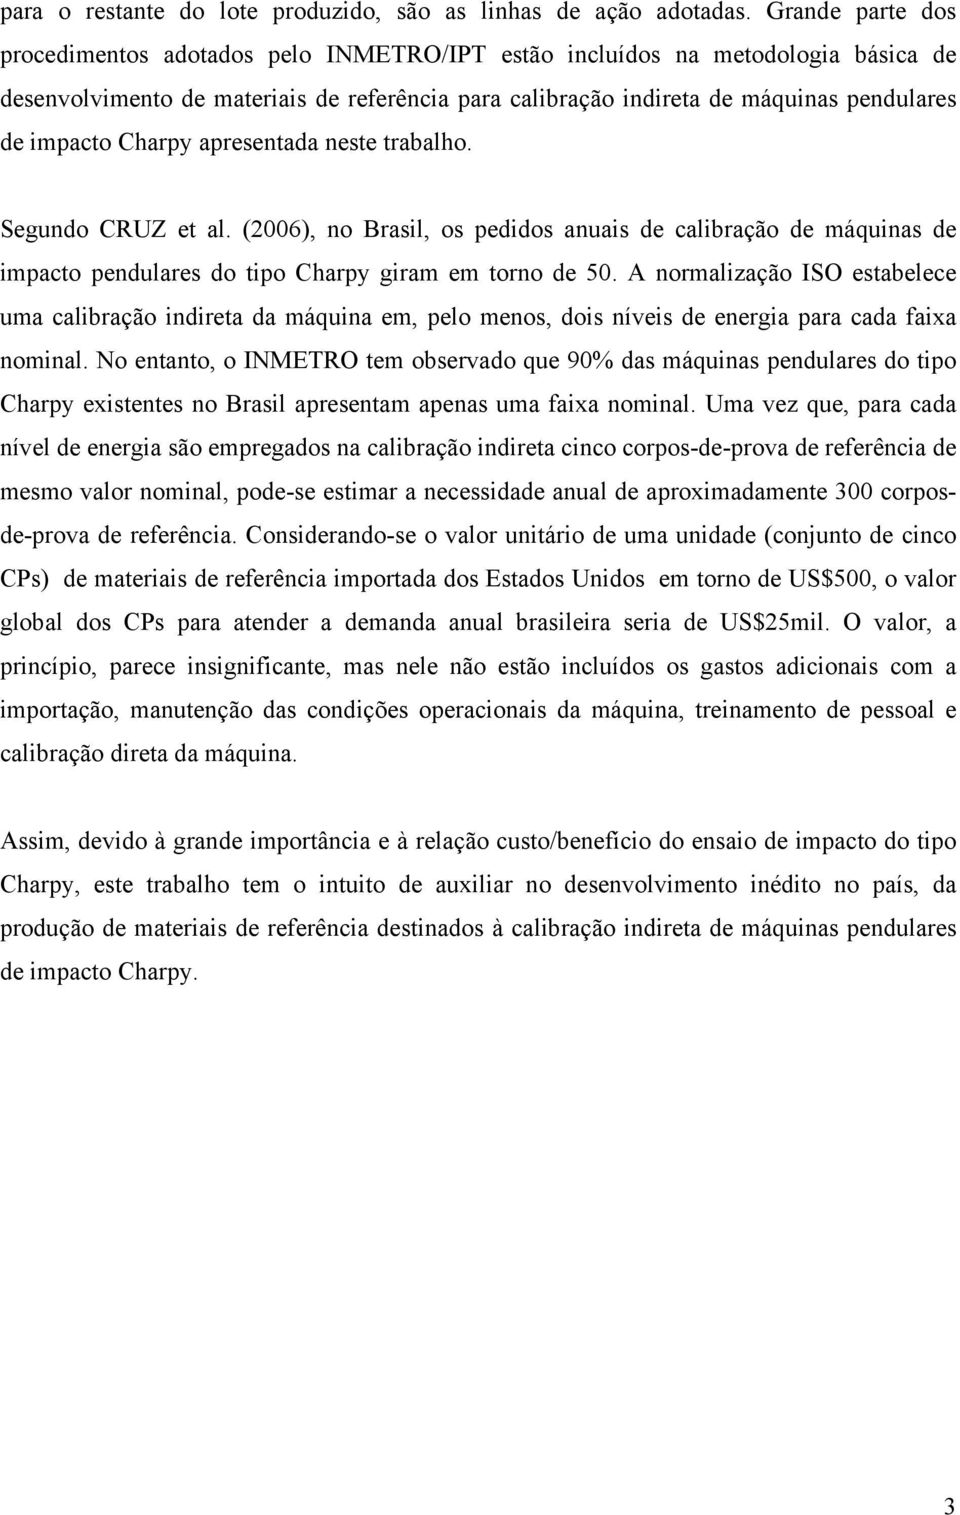 Charpy apresentada neste trabalho. Segundo CRUZ et al. (2006), no Brasil, os pedidos anuais de calibração de máquinas de impacto pendulares do tipo Charpy giram em torno de 50.